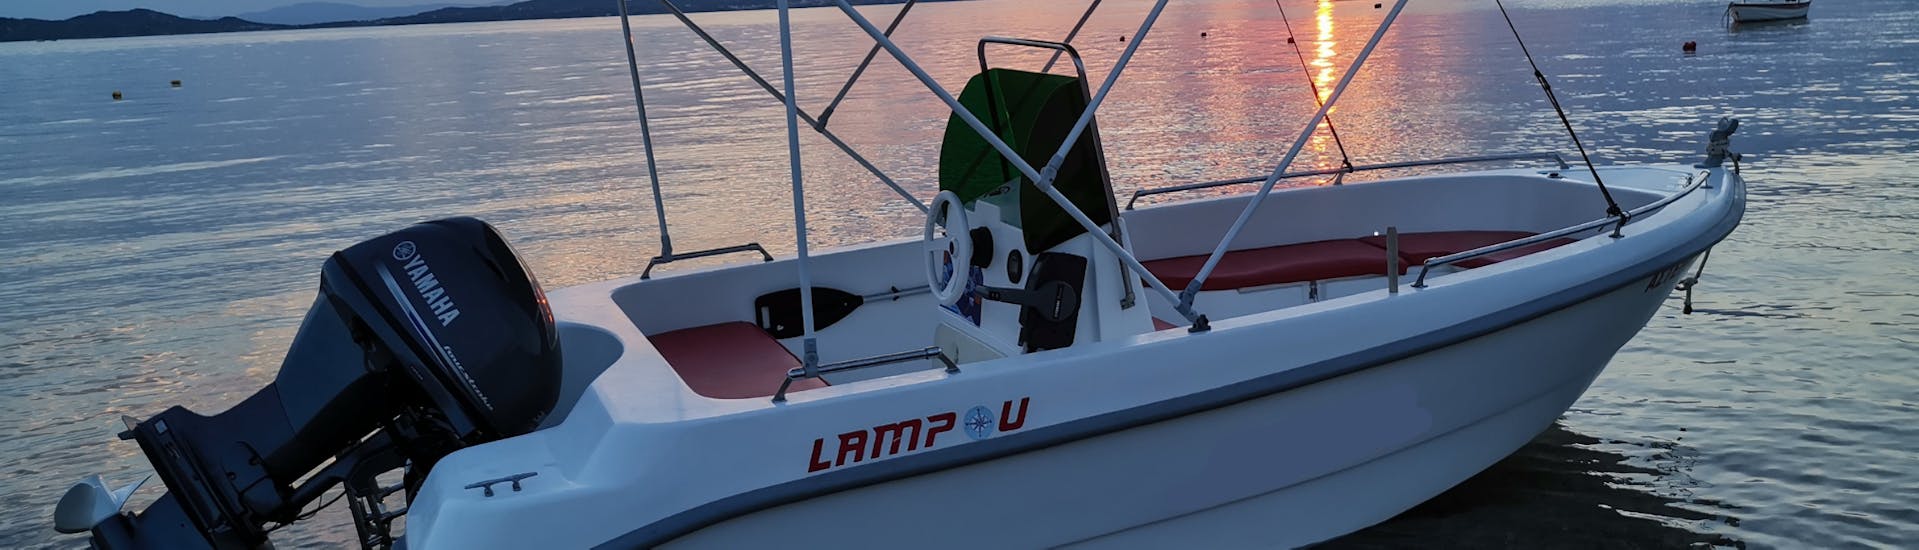 Le bateau avec le magnifique coucher de soleil grecque lors de la Location de bateau à Ouranoupoli (jusqu'à 6 personnes) sans Permis avec Rent a Boat Lampou.